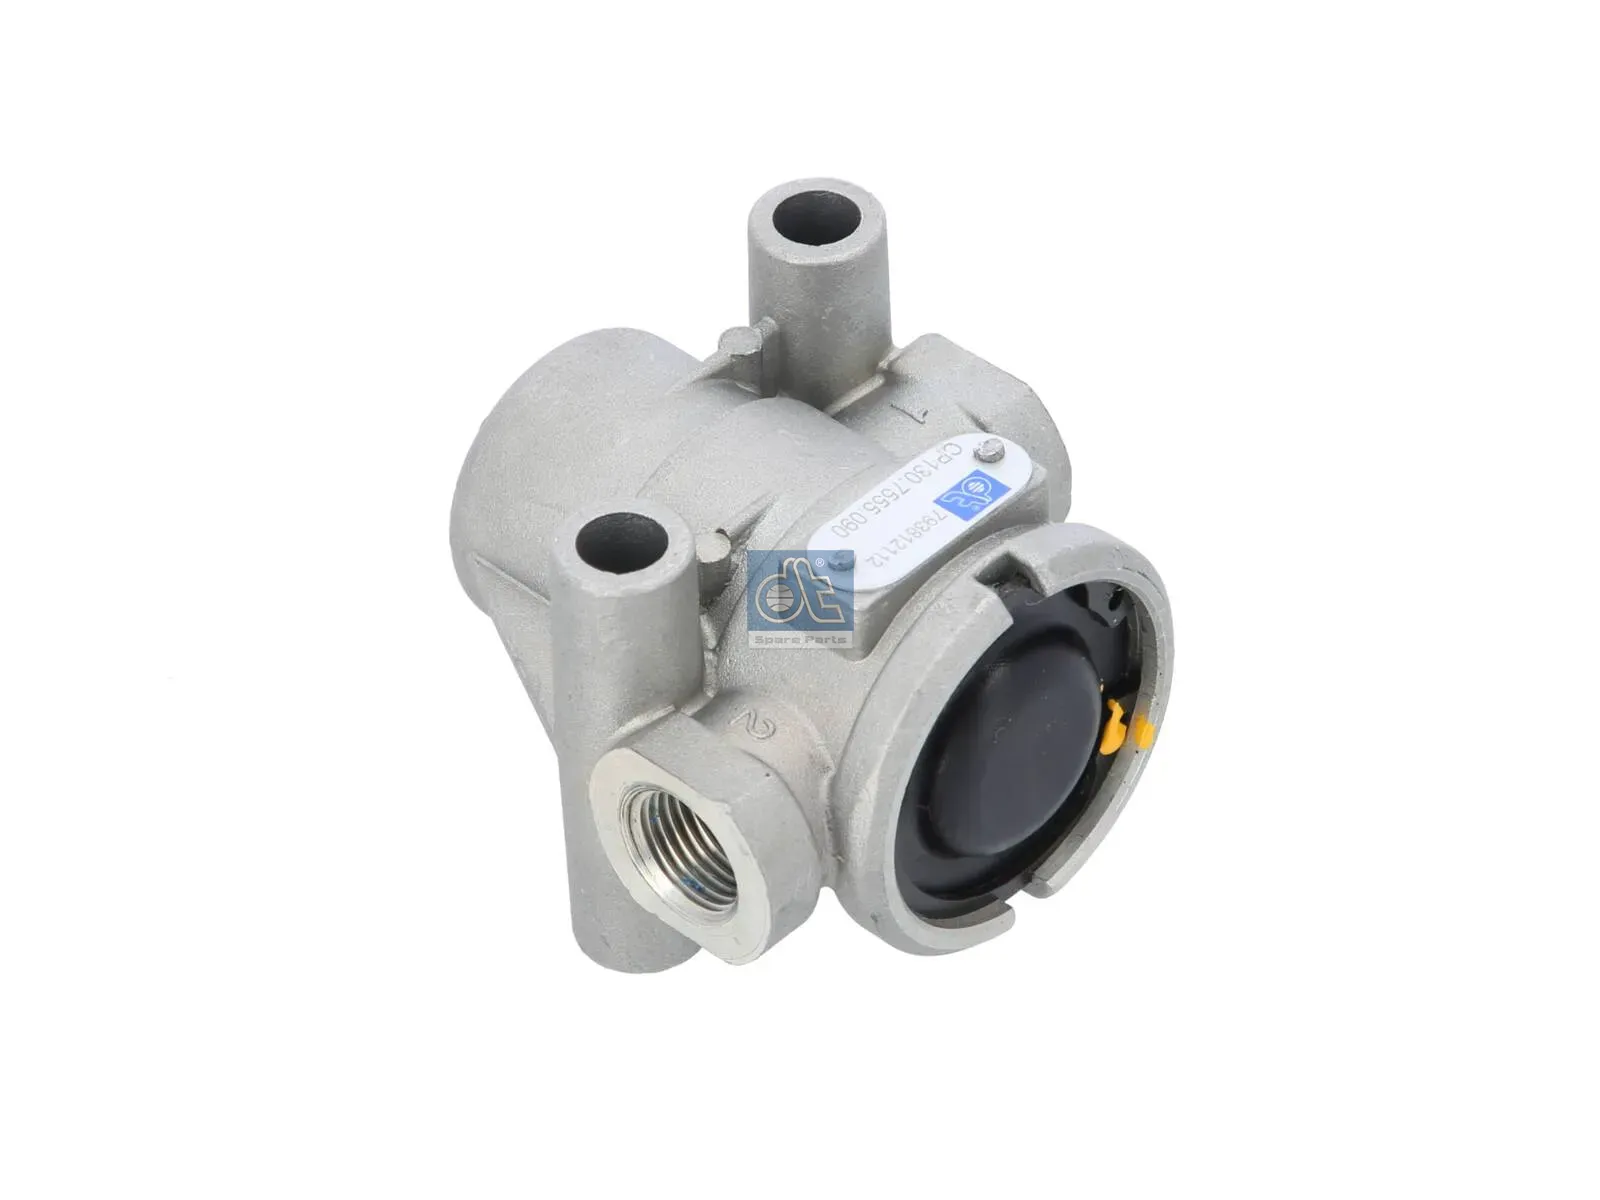 Pressure limiting valve